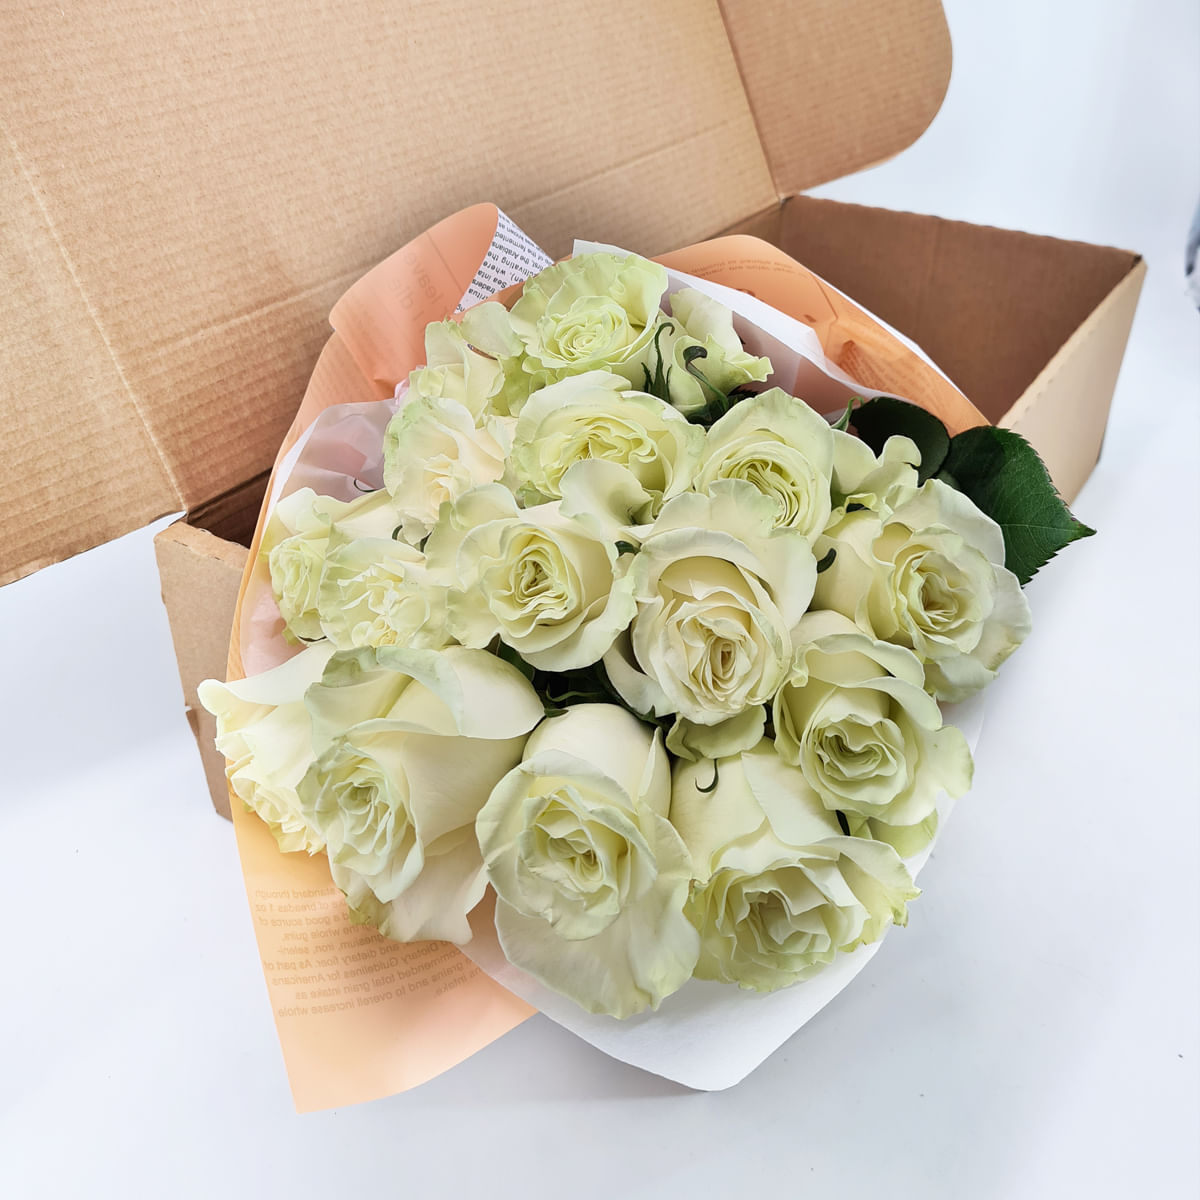 Buchet de 15 trandafiri albi in cutie Buchet de 15 trandafiri albi in cutie albi